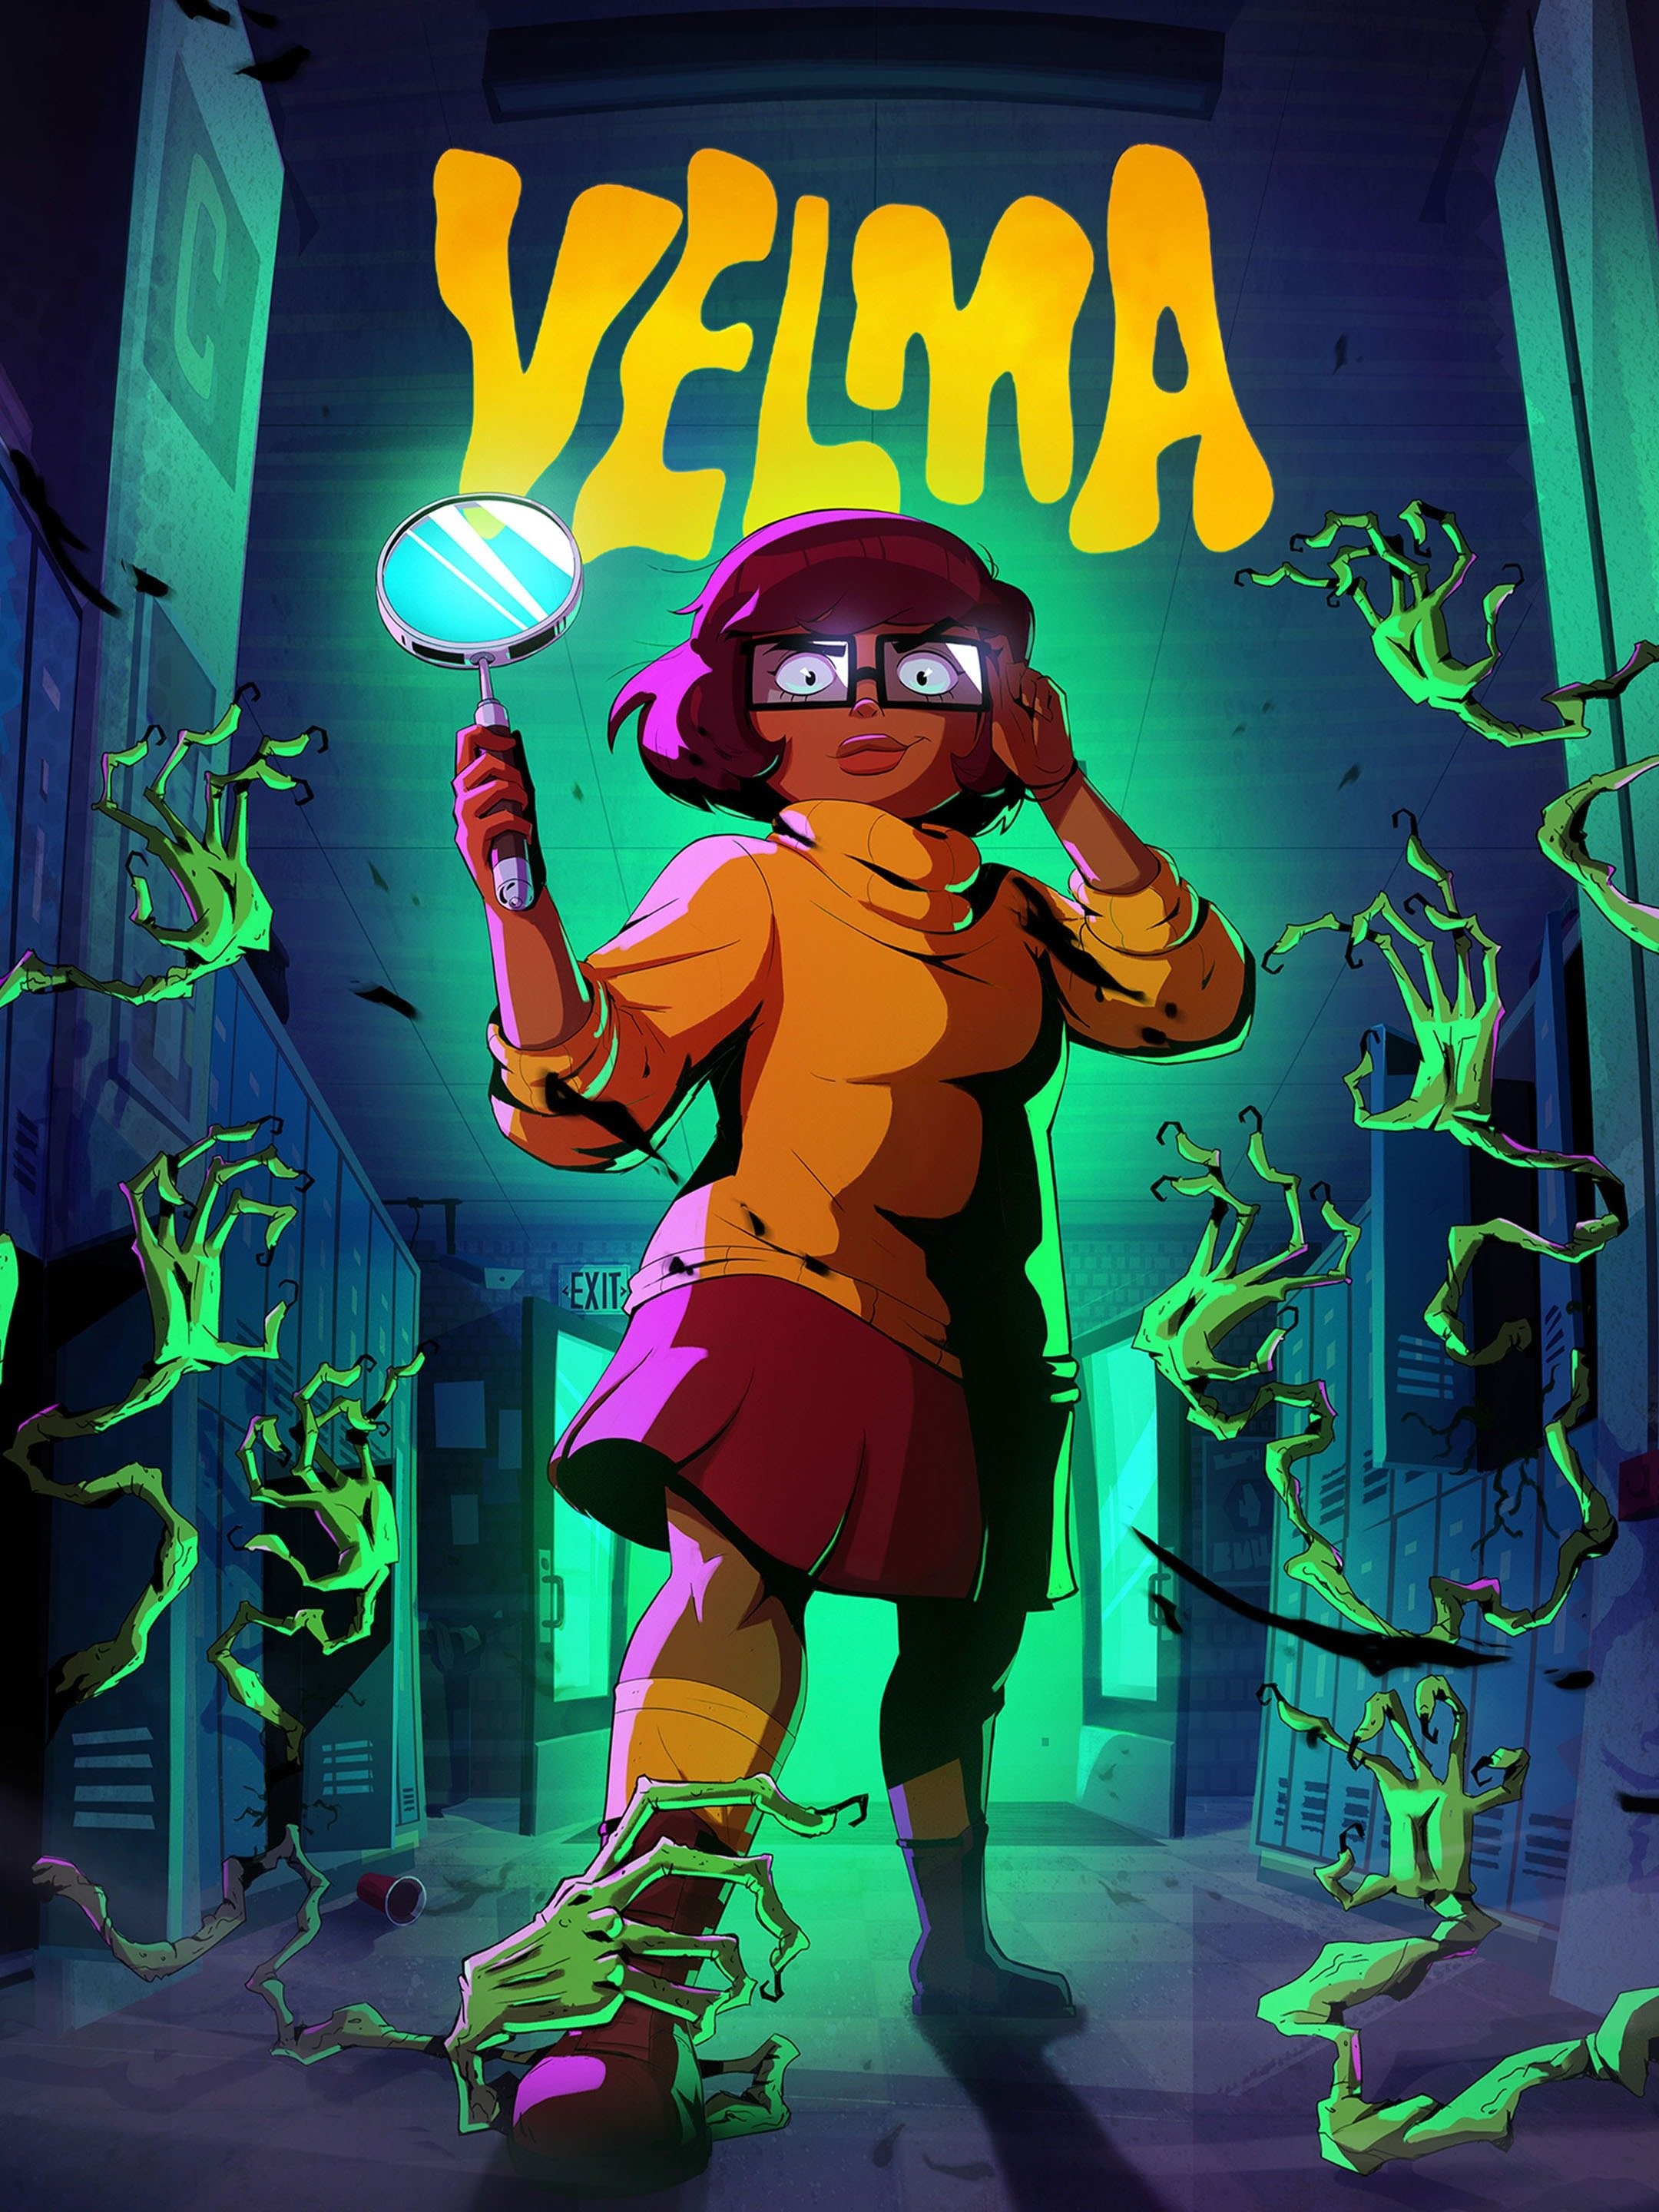 Velma poderá receber 2ª temporada